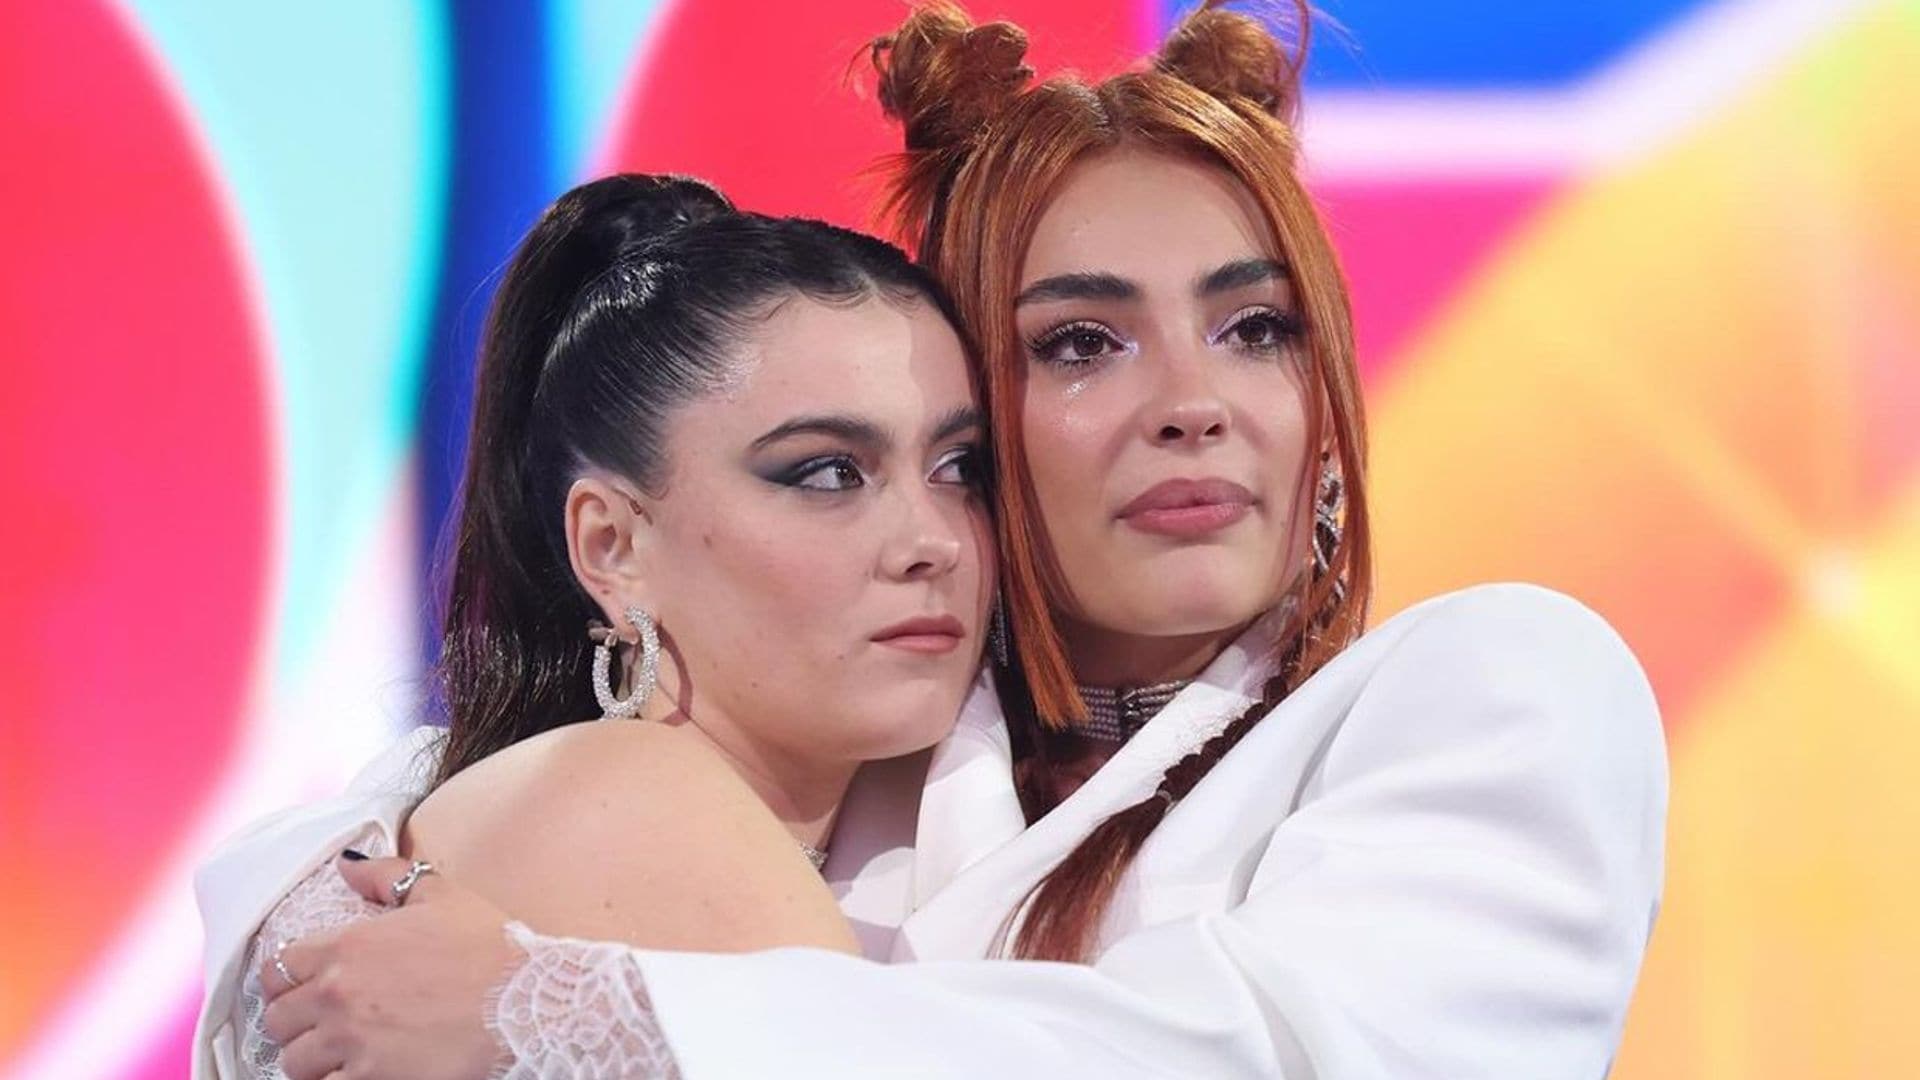 La tristeza de Violeta y Chiara tras ser nominadas en Operación Triunfo